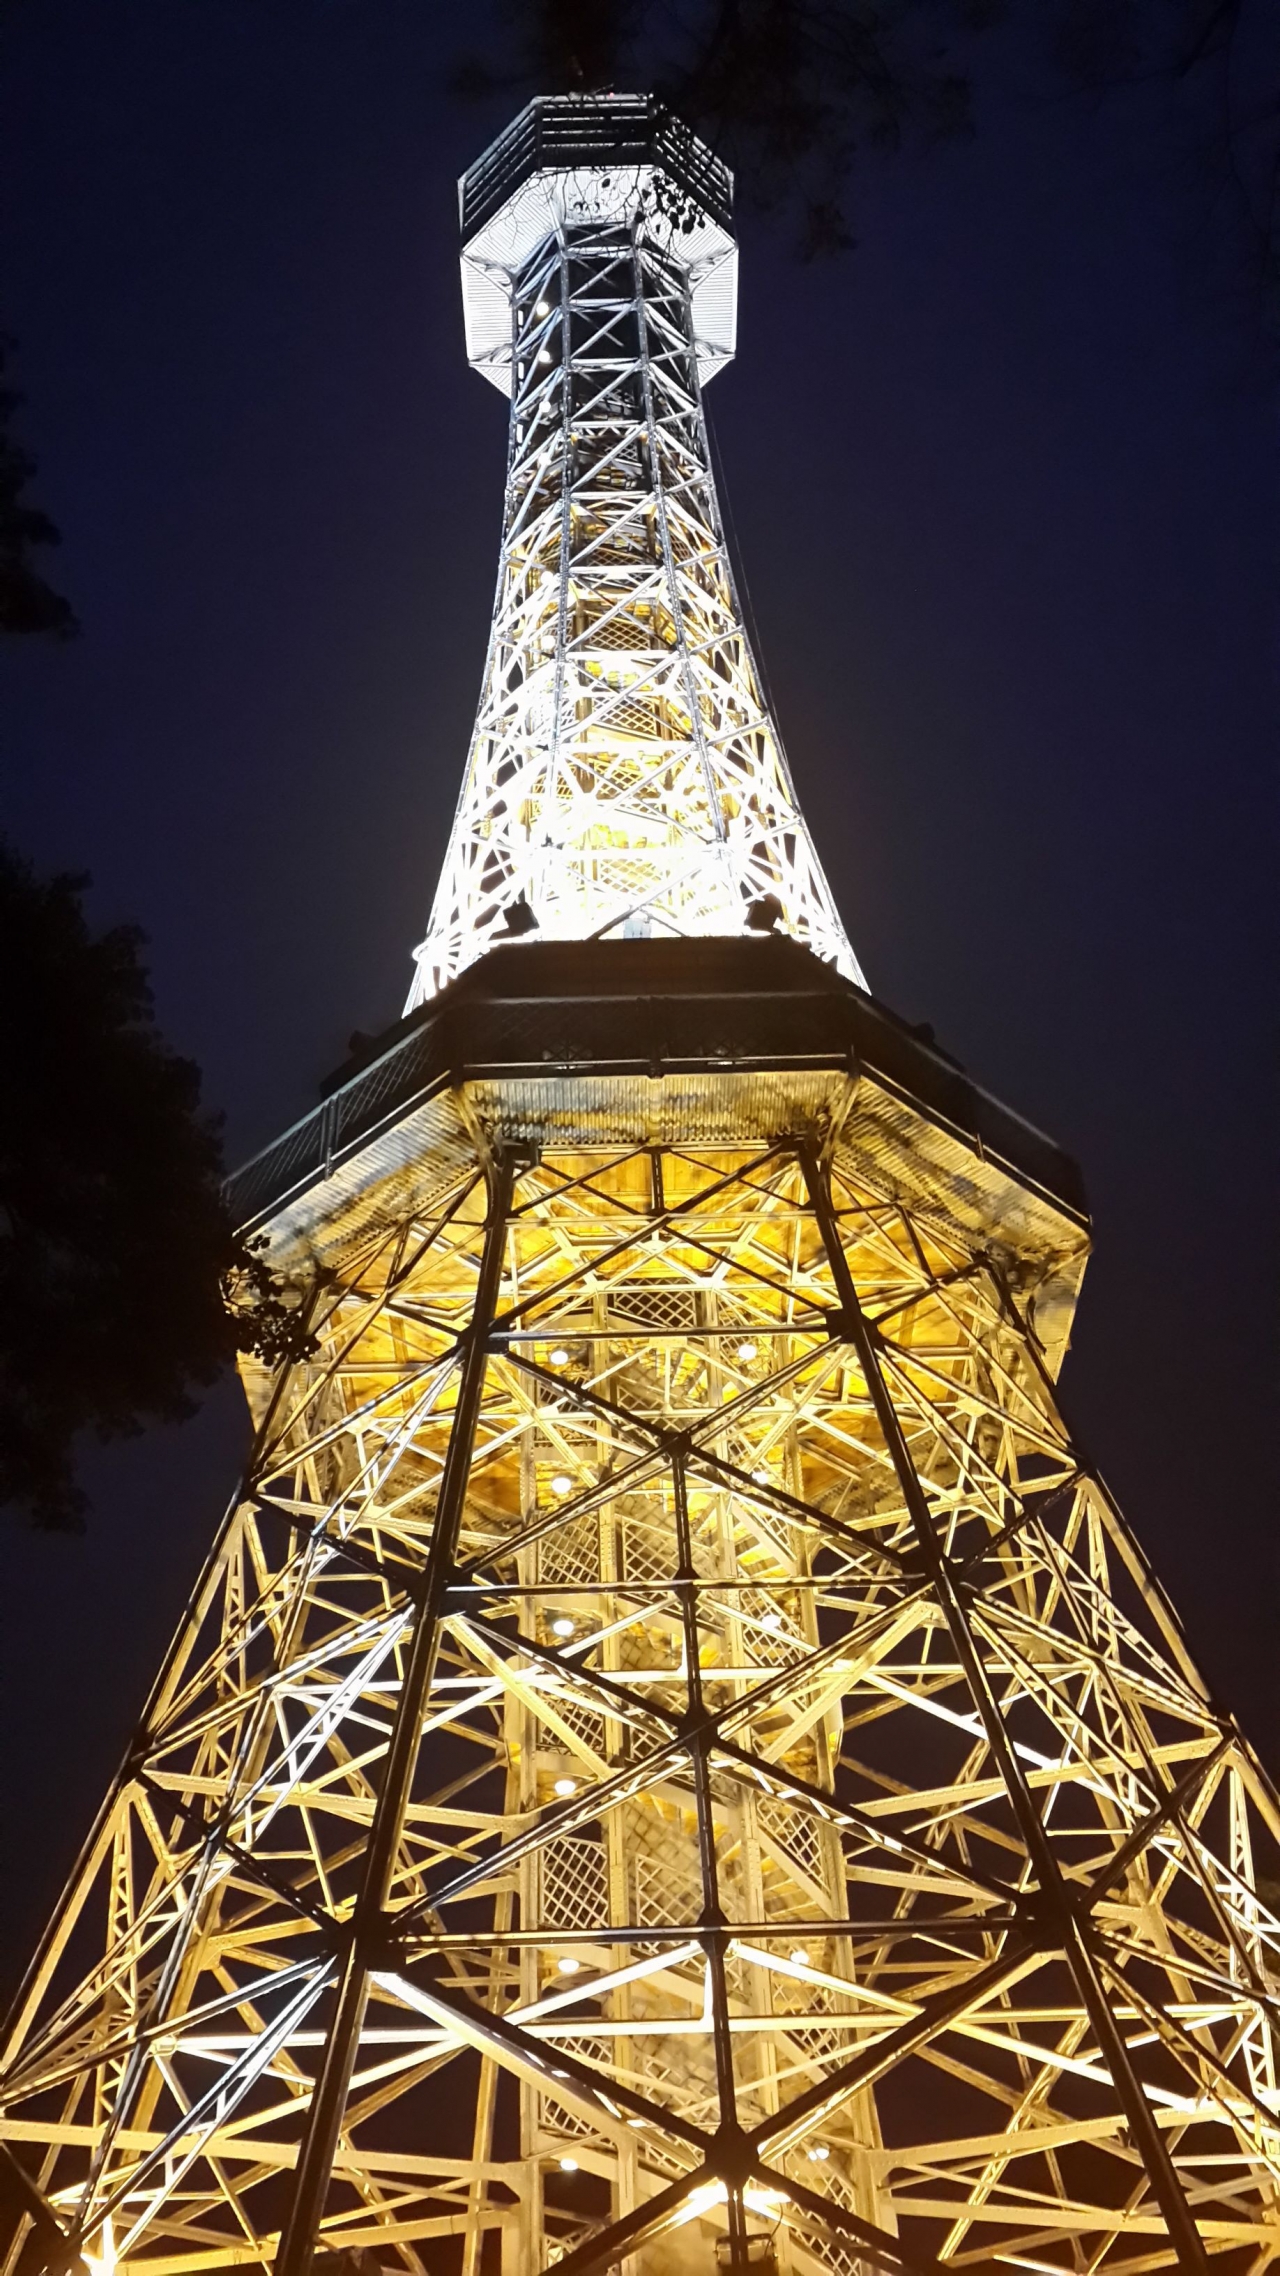 Немного Википедии: Пе́тршинская башня была построена на одноименном холме Праги по инициативе Клуба чешских туристов после посещения Всемирной выставки в Париже в 1889 году, и является подобием Эйфелевой башне.<br />&lt;...&gt;<br />Строительство было начато 16 марта 1891 года, а уже 20 августа состоялось ее торжественное открытие. Высота башни – 60 метров.